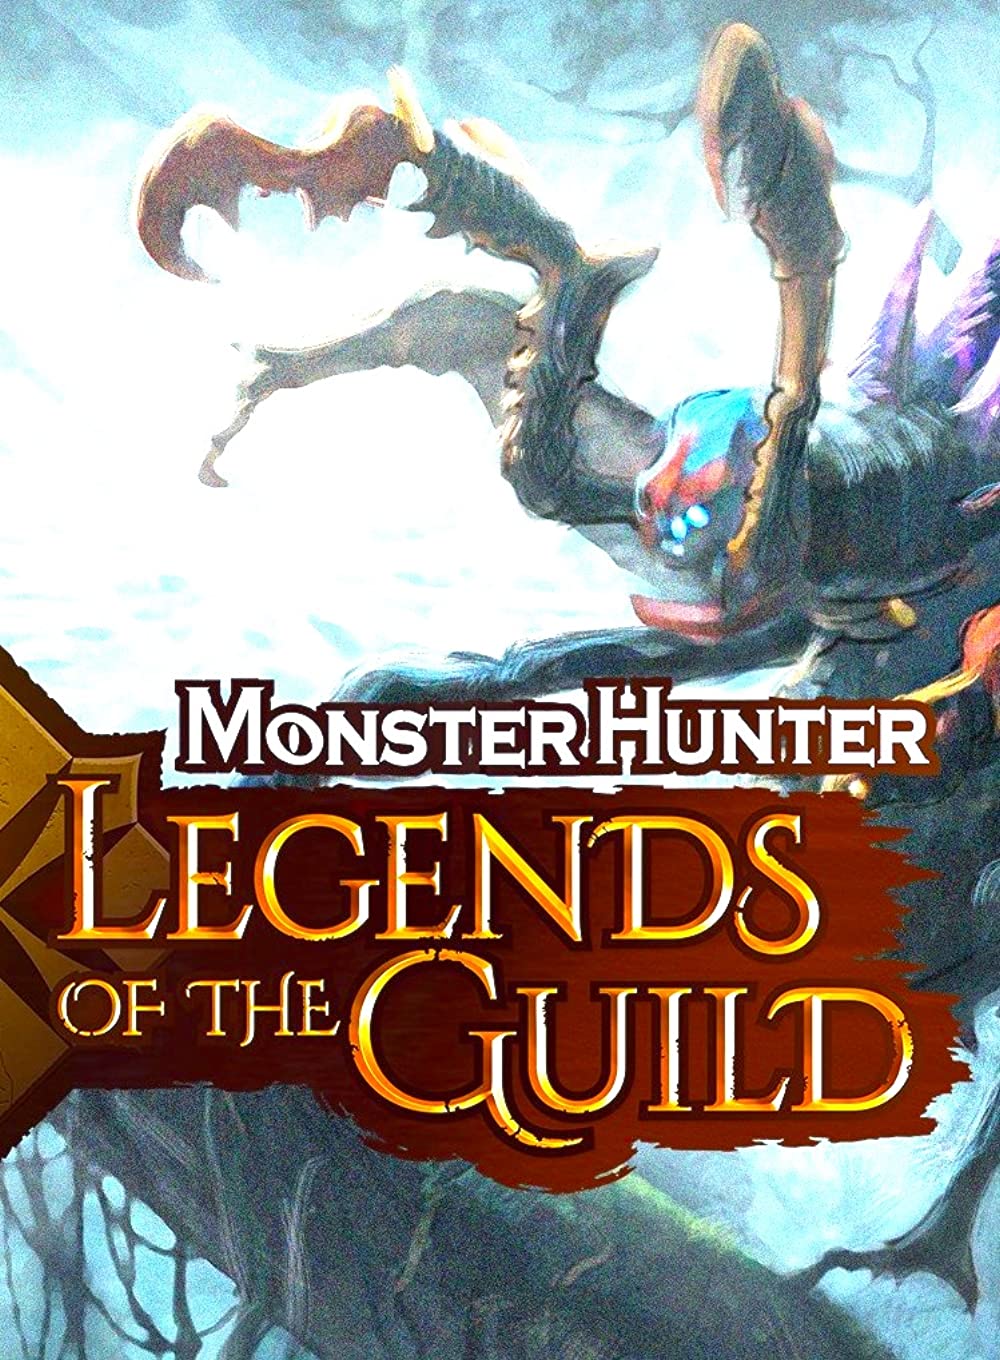 monster hunter: legends of the guild imdb